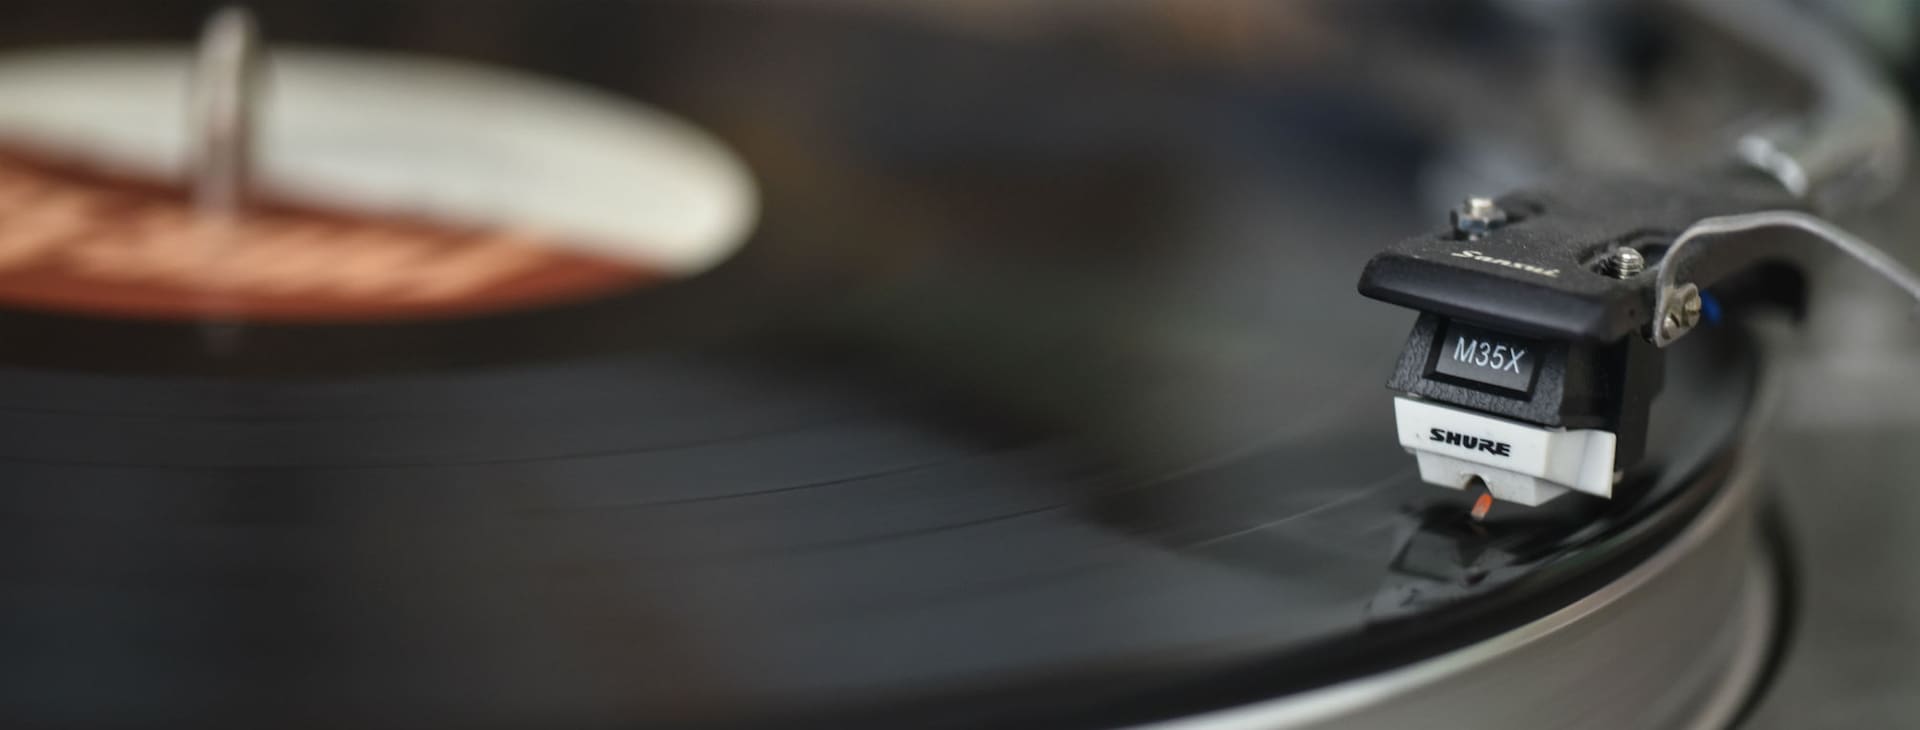 La casa del disco de vinil: la nostalgia por la música analógica en un  mundo digitalizado, Sociedad, La Revista